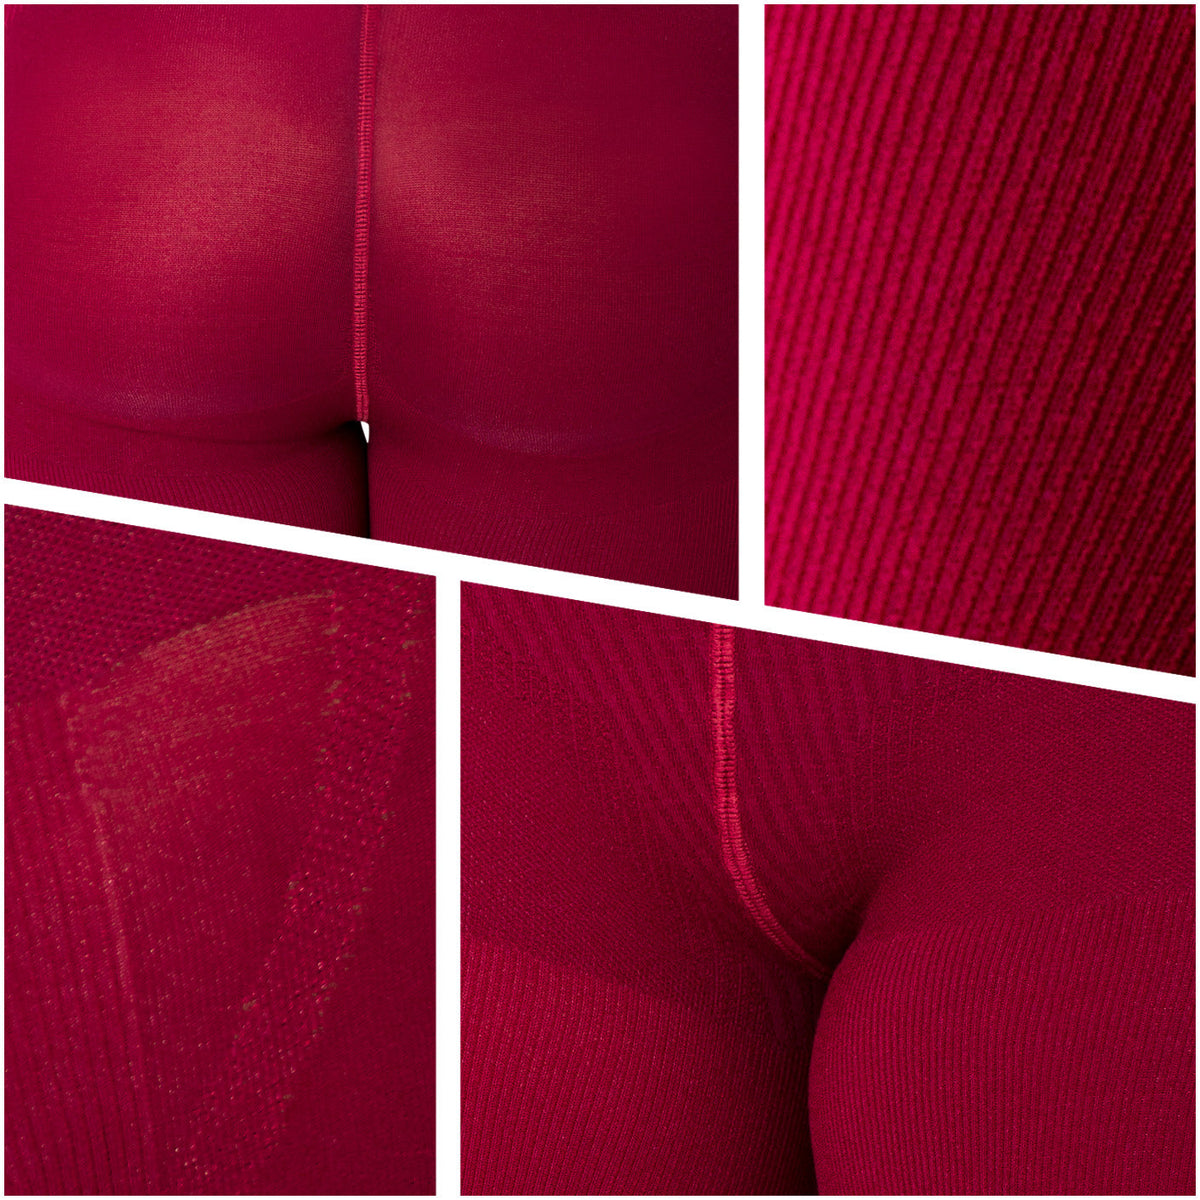 LT.Rose 21831 | High Waist Butt Enhancing Fupa Control pantyhose for Women